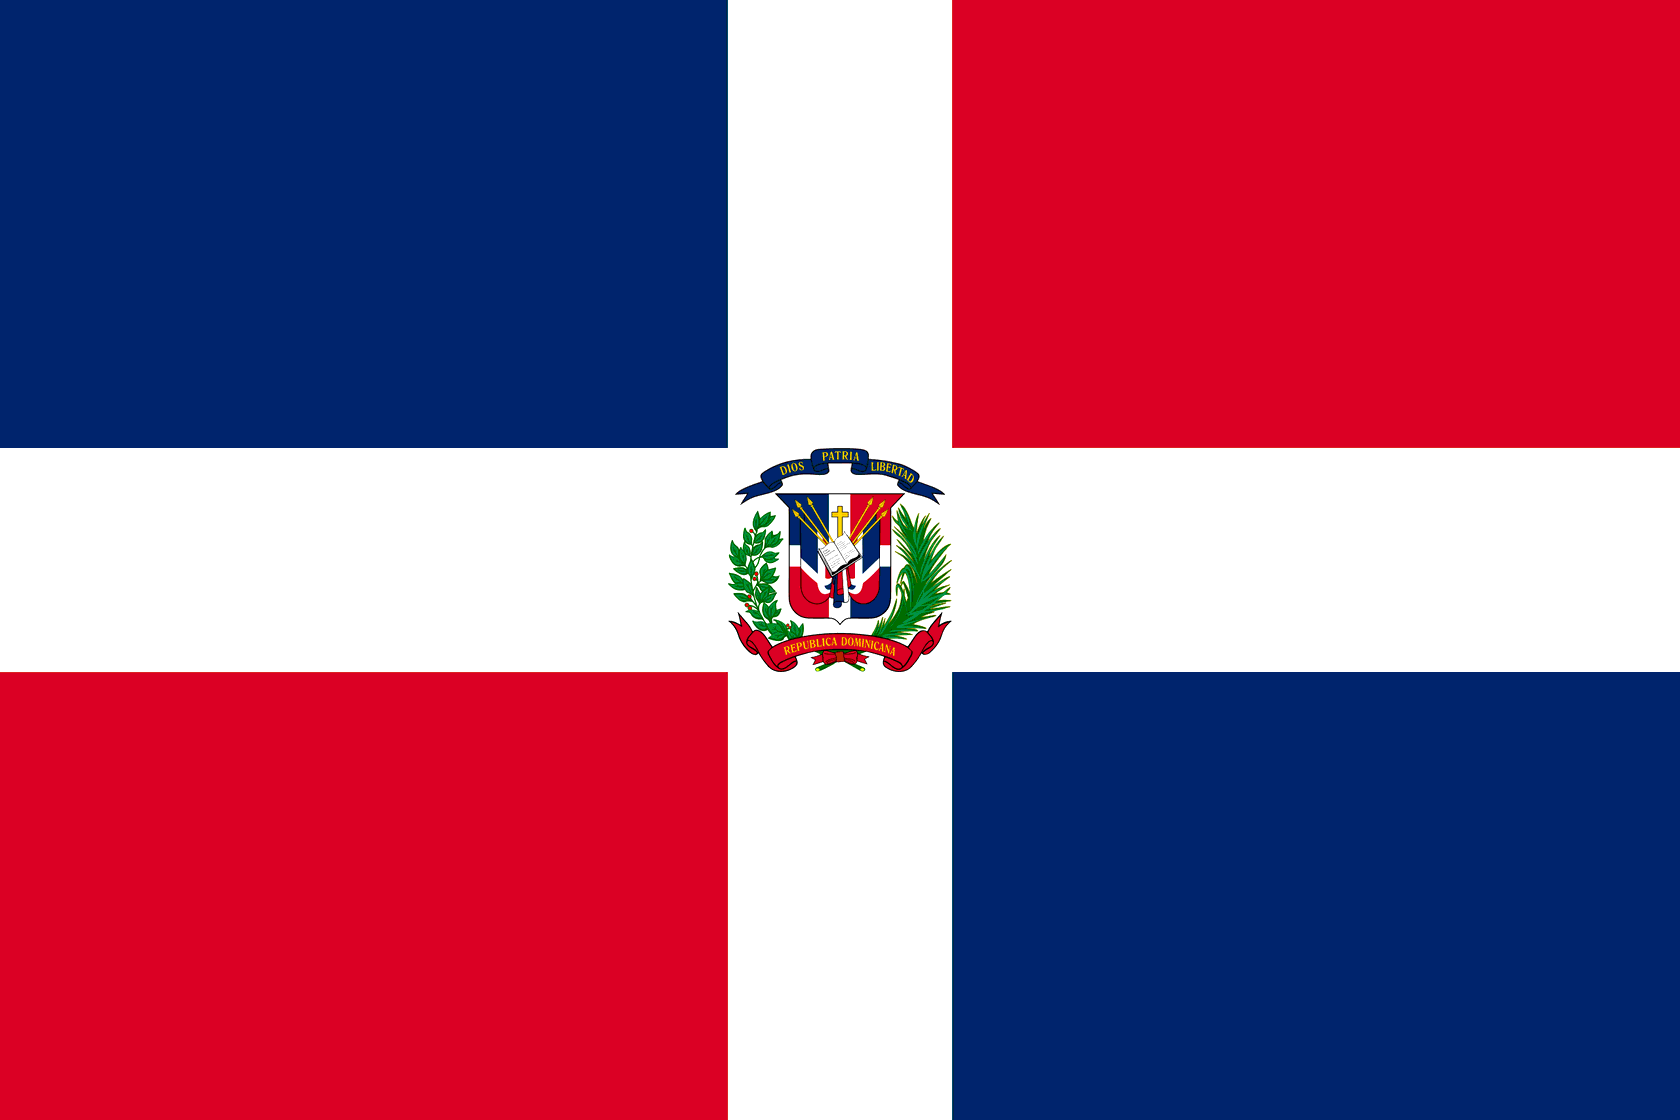 Валюта доминиканской республики. Флаг Доминиканской Республики. Республика Доминикана флаг. Флаг Доминиканской Республики фото. Страна Доминикана флаг.